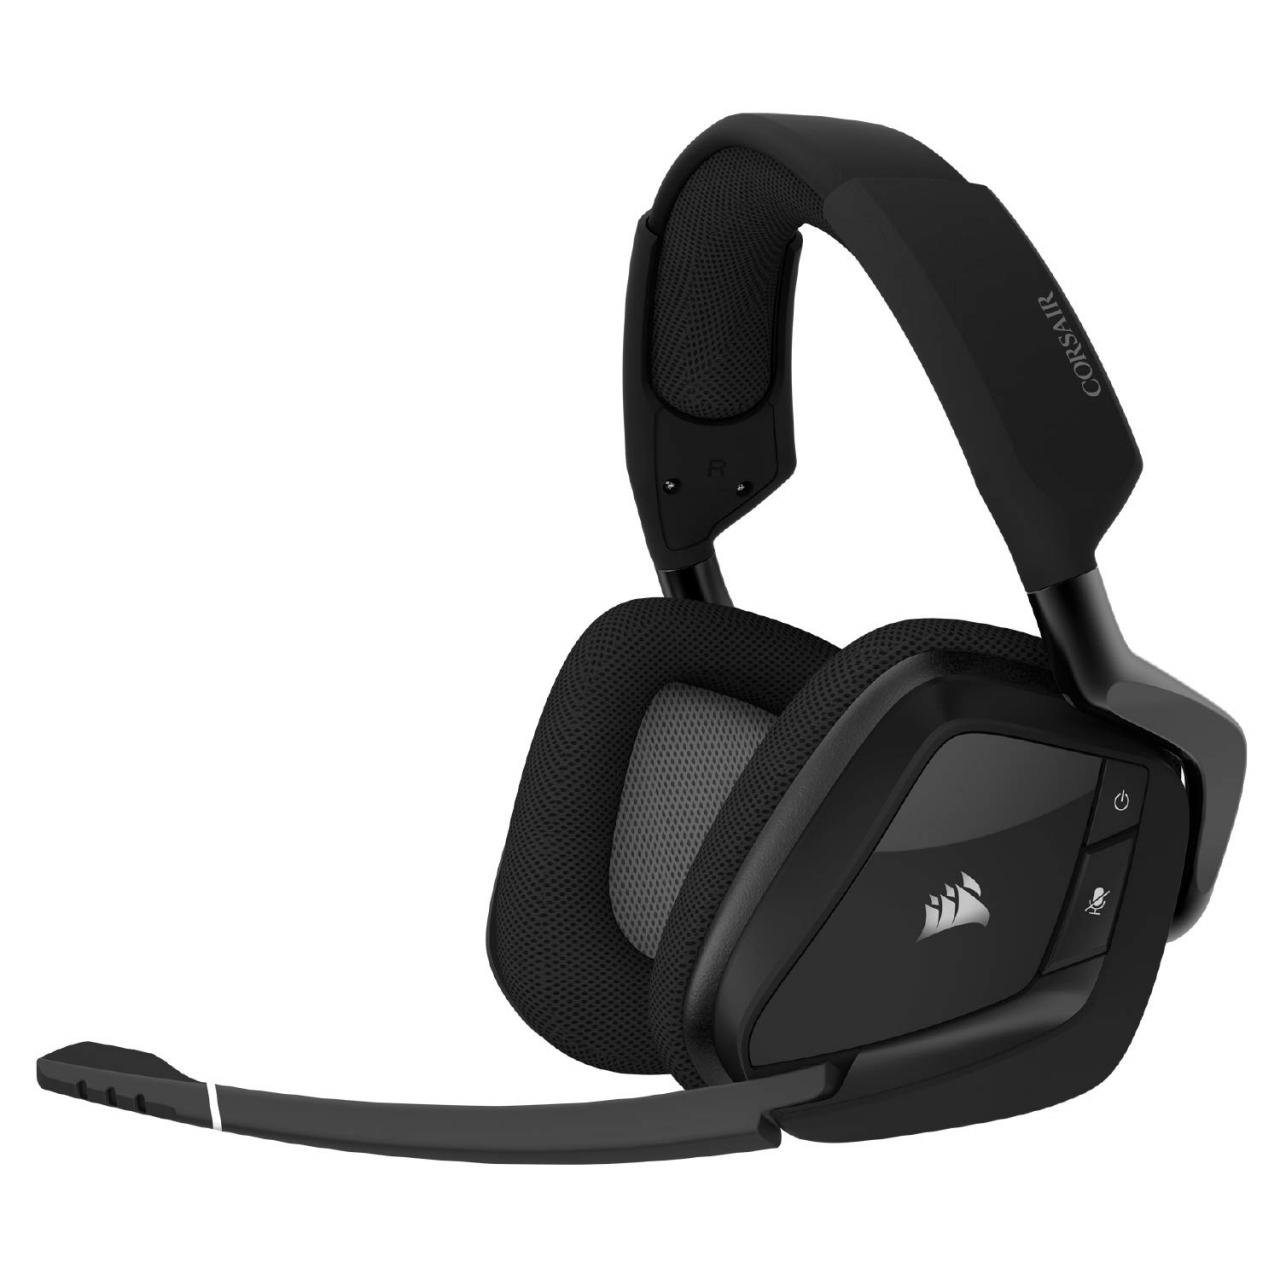 Corsair Void Rgb Elite Wireless Premium Gaming Headset With 7.1 Surround Sound